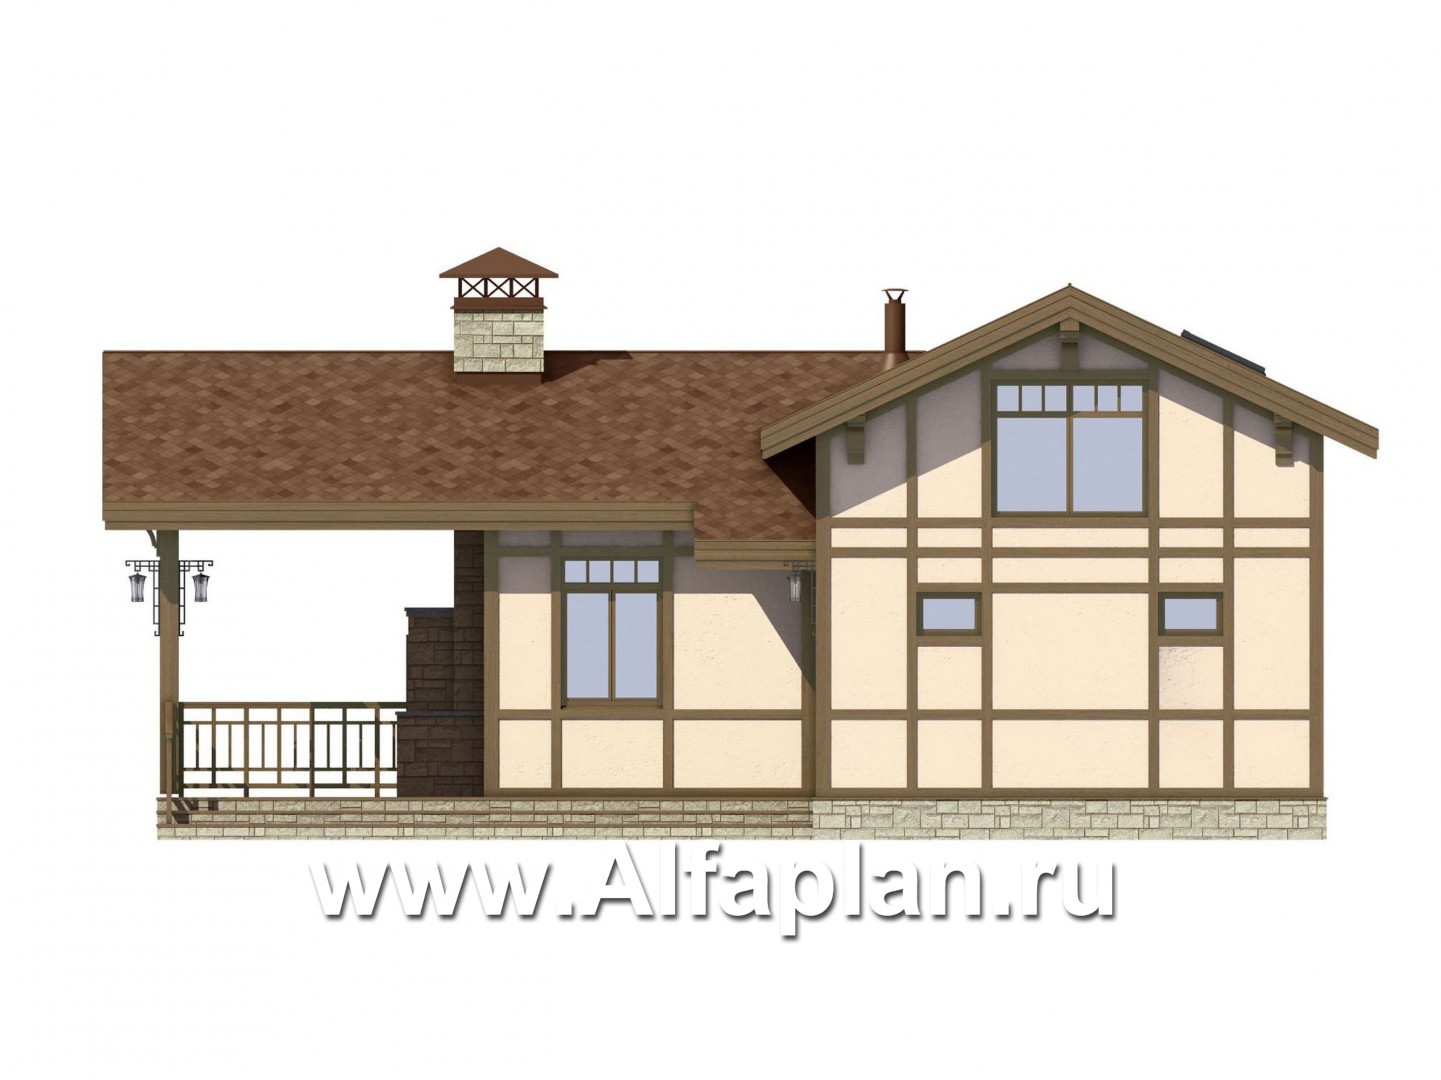 Проект дома с мансардой, из кирпича, планировка со вторым светом и с террасой, в стиле фахверк - фасад дома